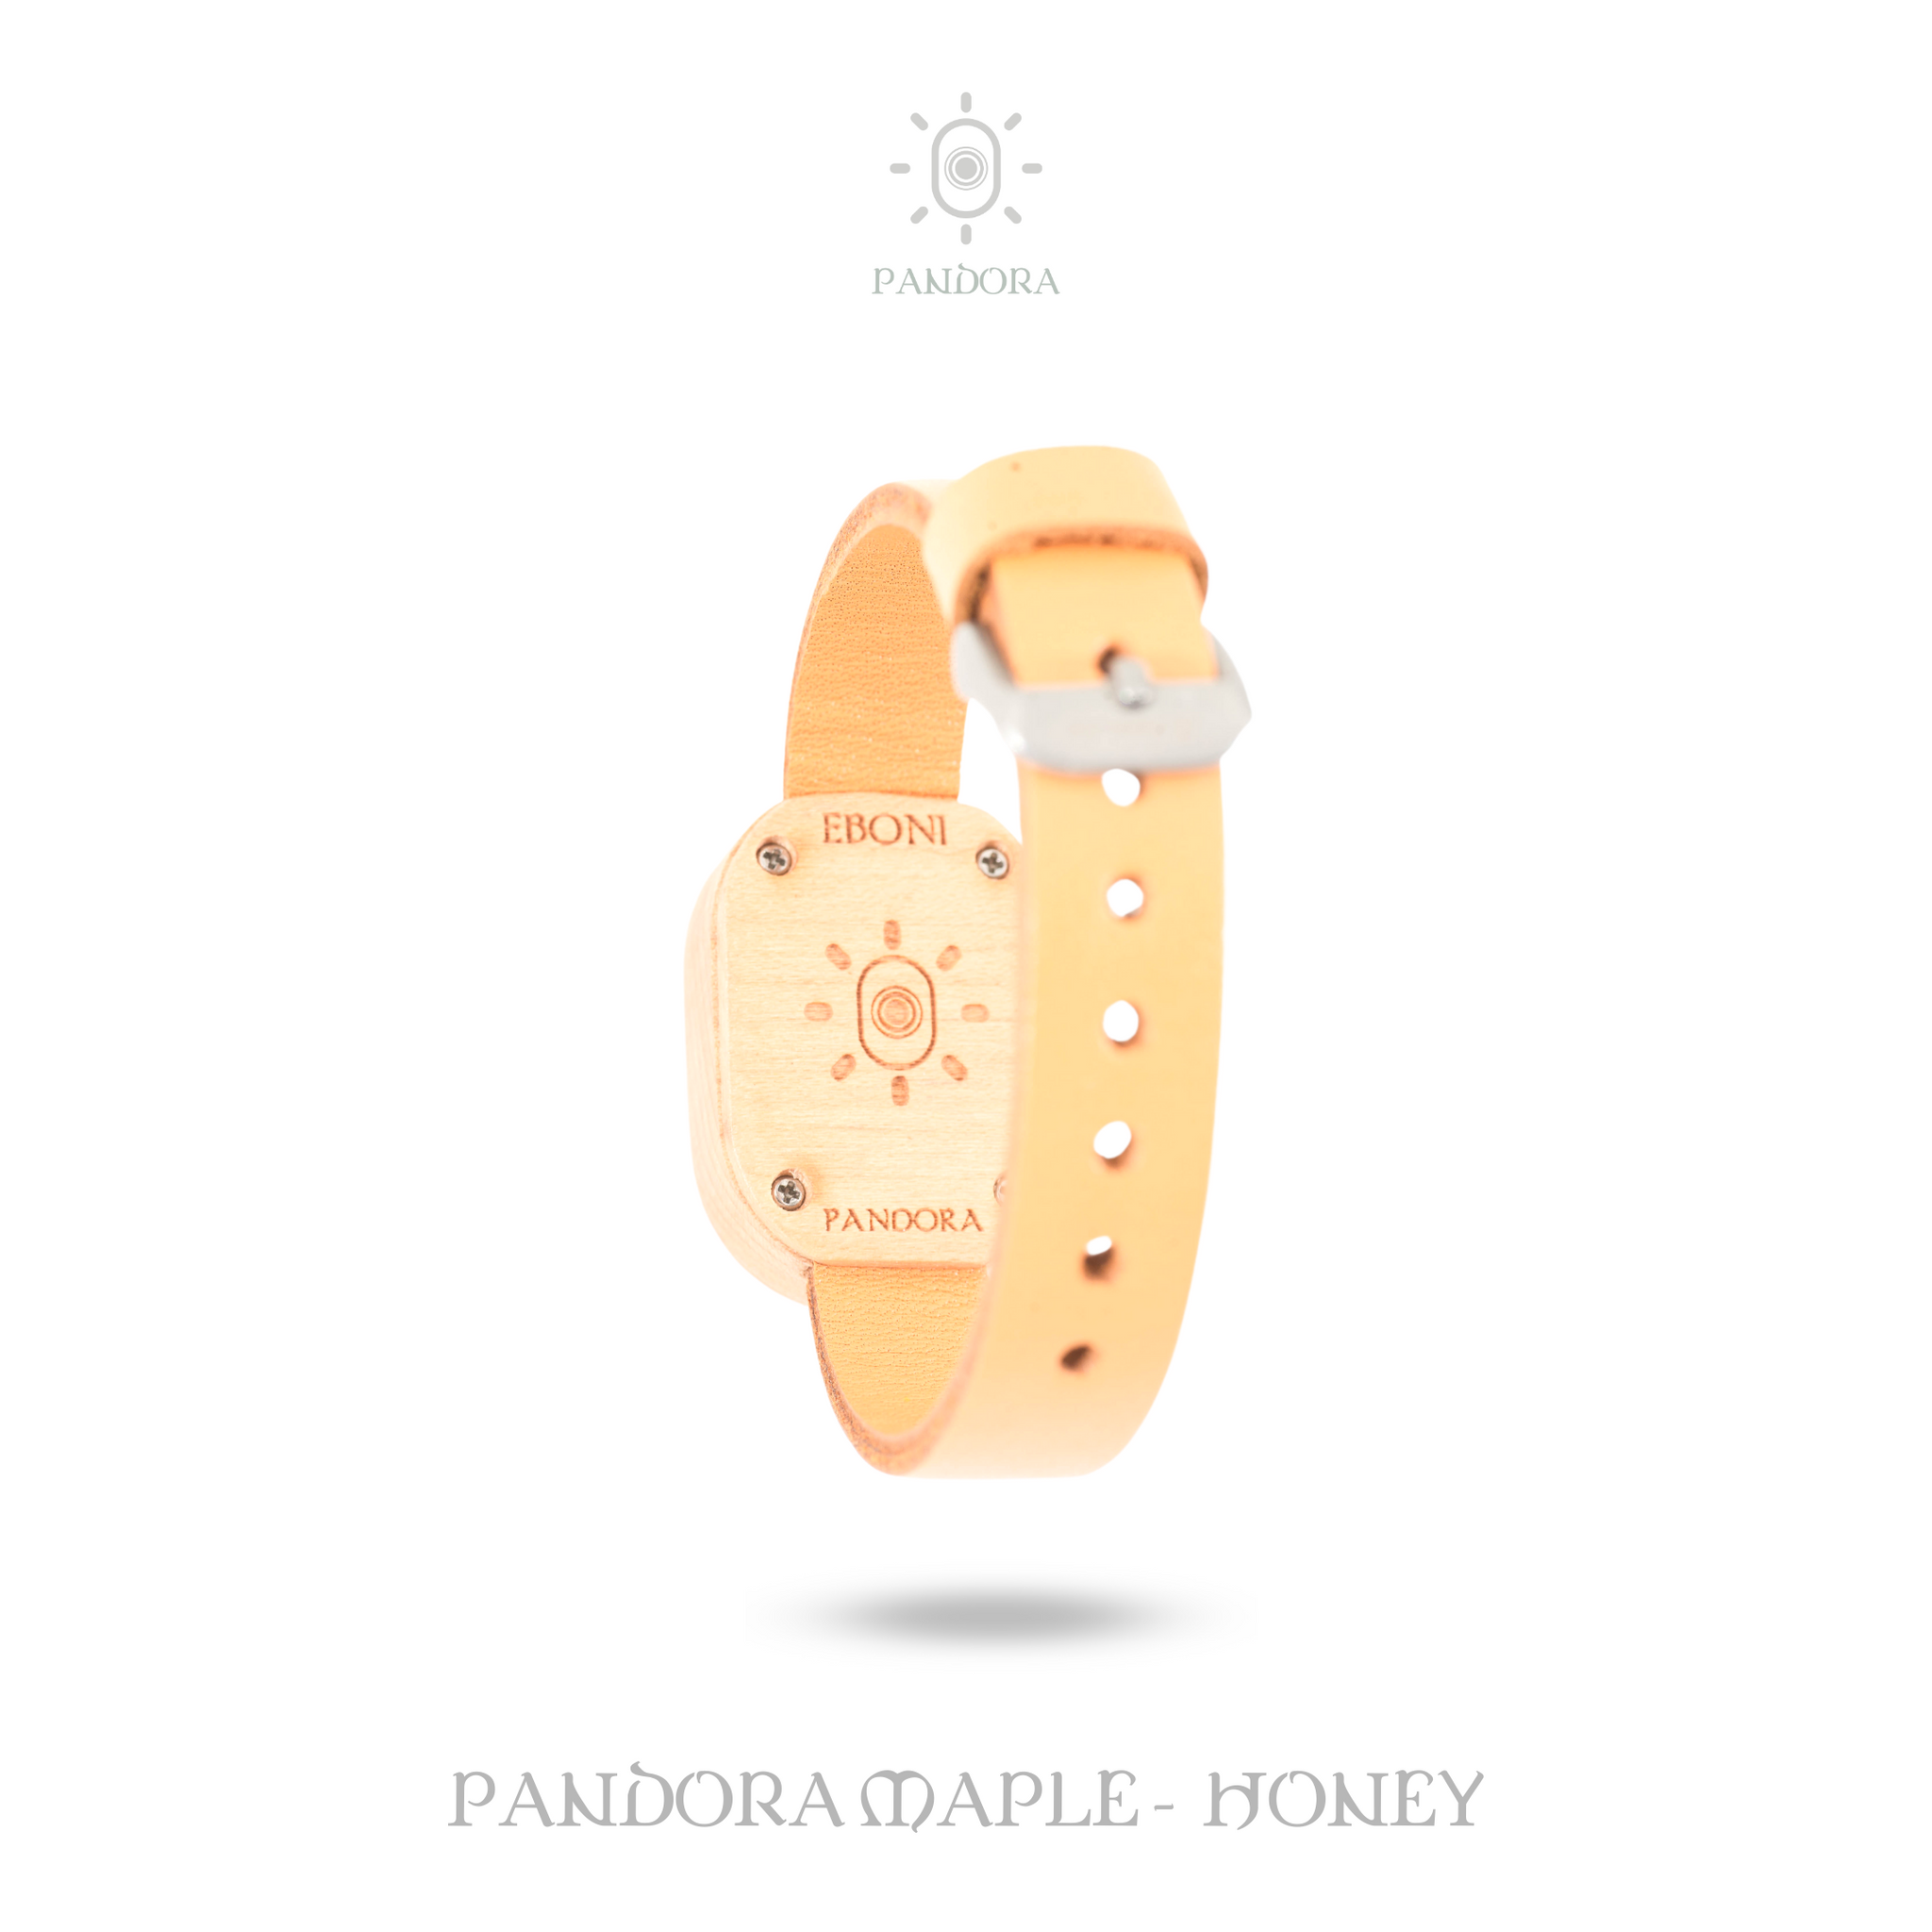 Eboni Pandora Maple - Honey